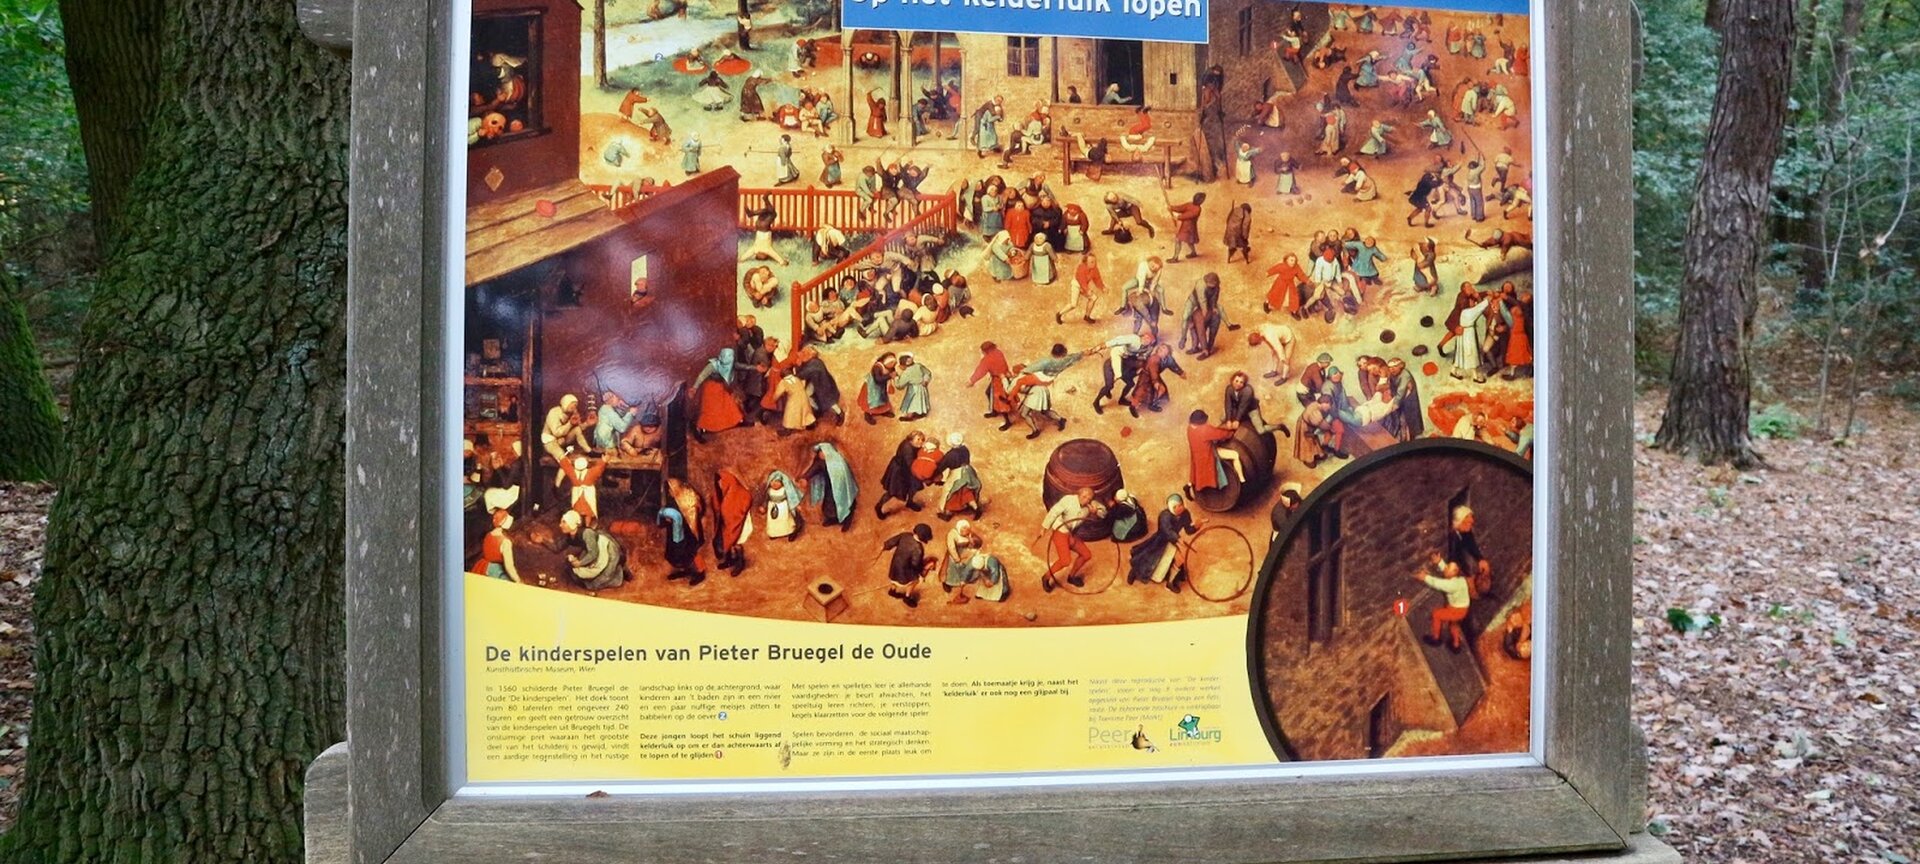 Pieter Bruegelkinderspelen - Pieter Bruegel kinderspelen Peer